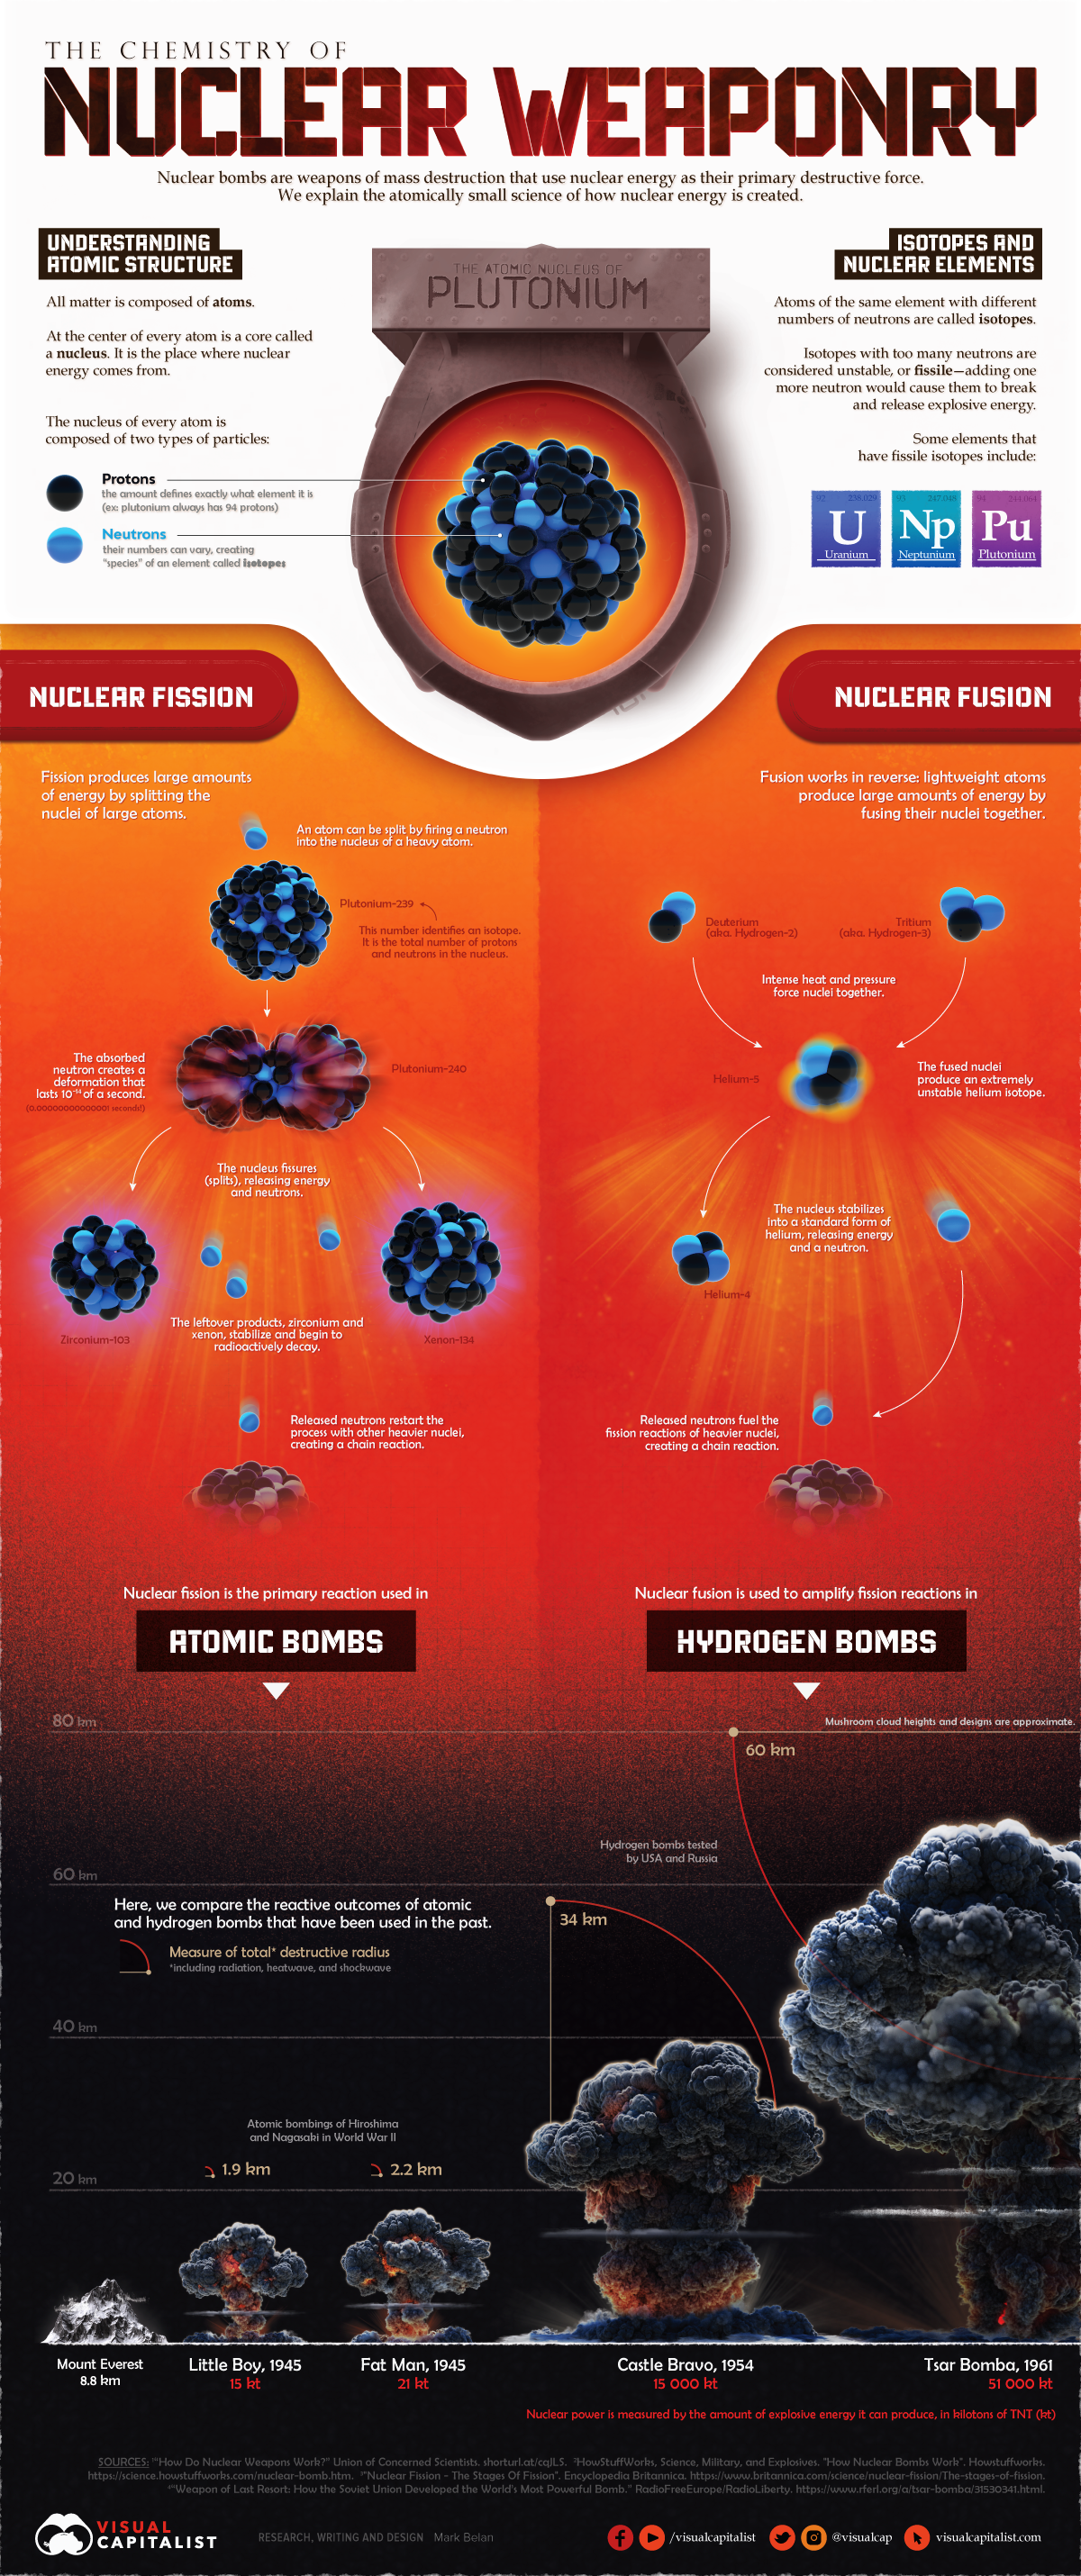 这张信息图形象化了核武器如何工作的科学，包括裂变和聚变过程